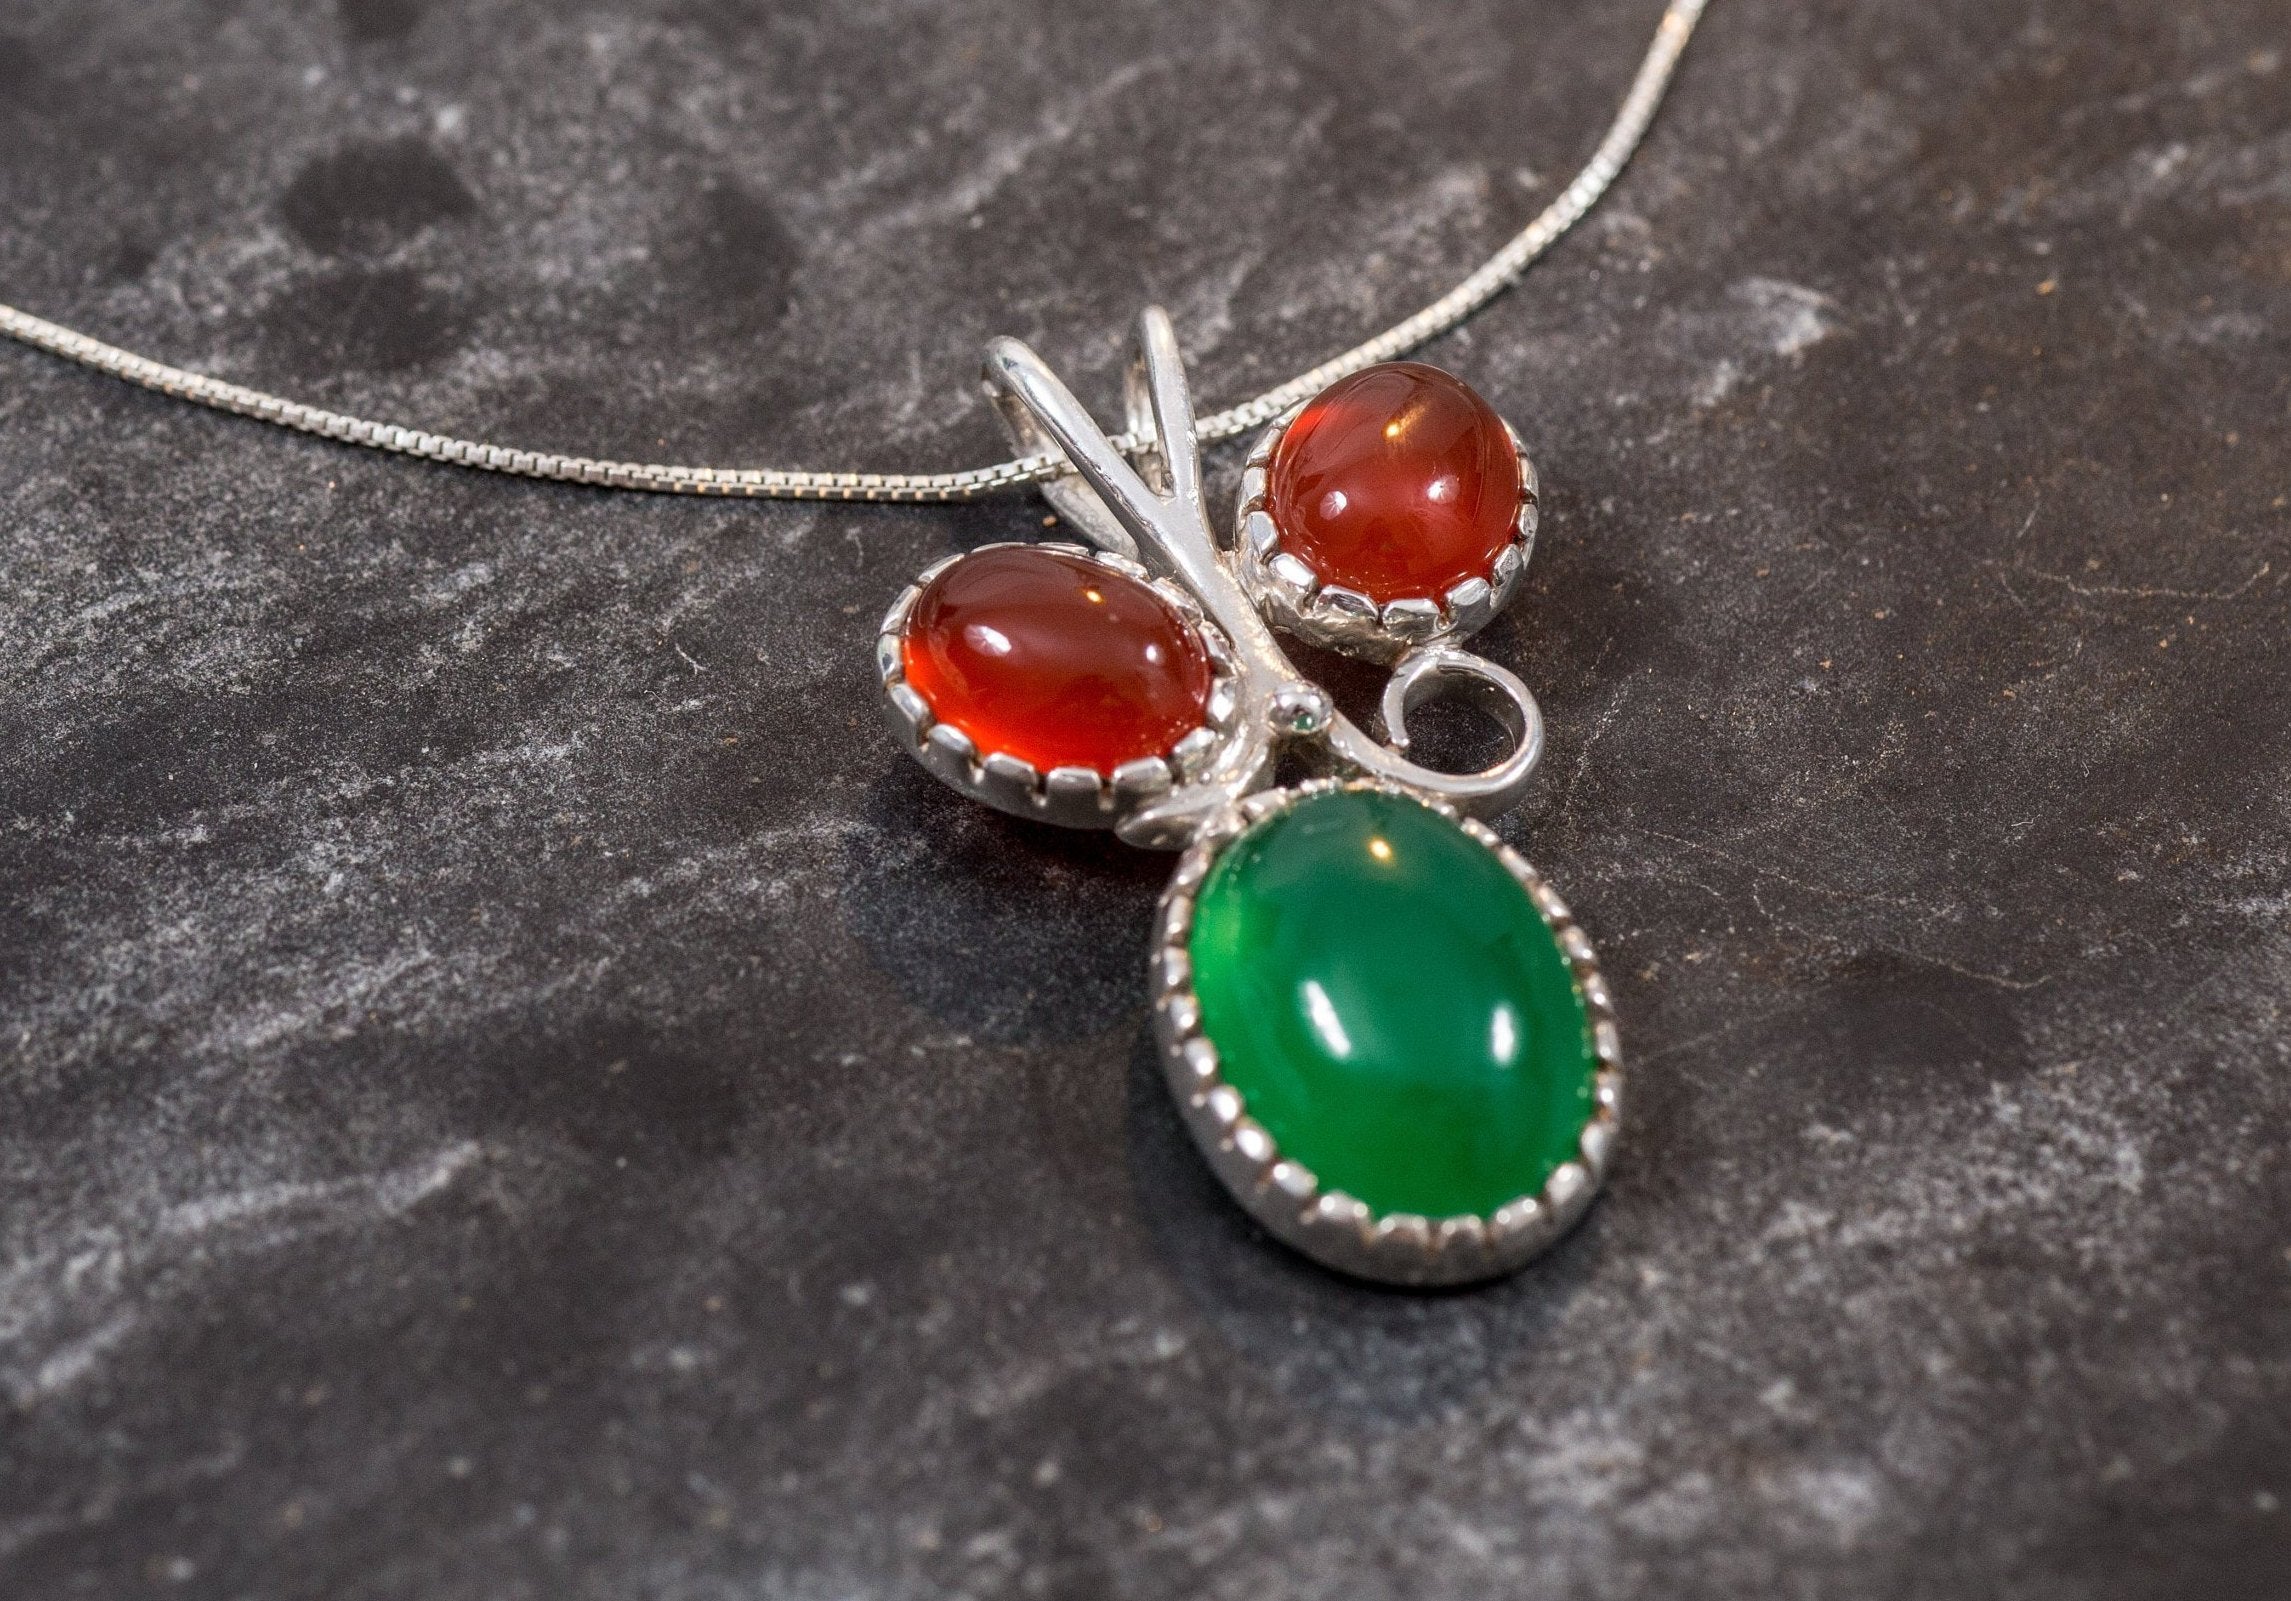 Emerald Pendant, Carnelian Pendant, Natural Carnelian, August Birthstone, Leaf Pendant, Created Emerald, Solid Silver Pendant, Carnelian